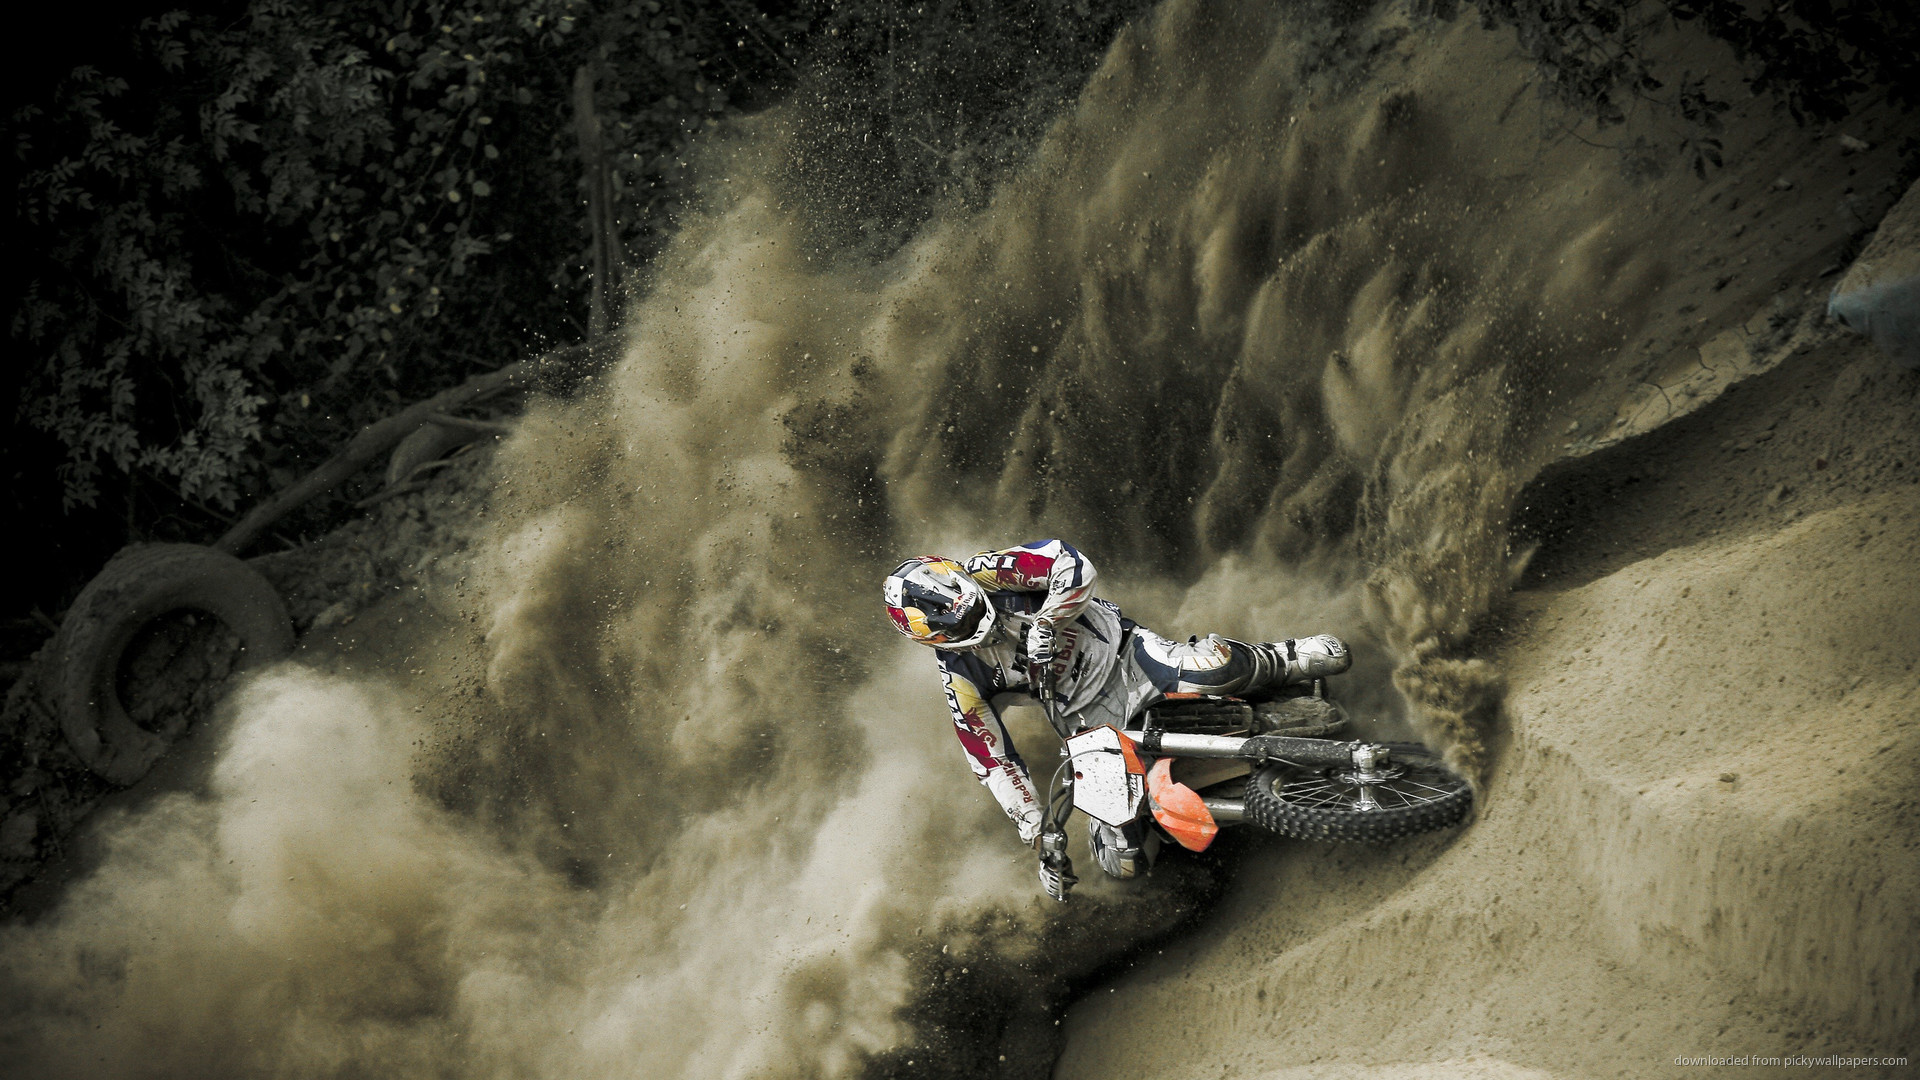 1920x1080 Dirt Bike Motocross Widescreen Wallpaper picture